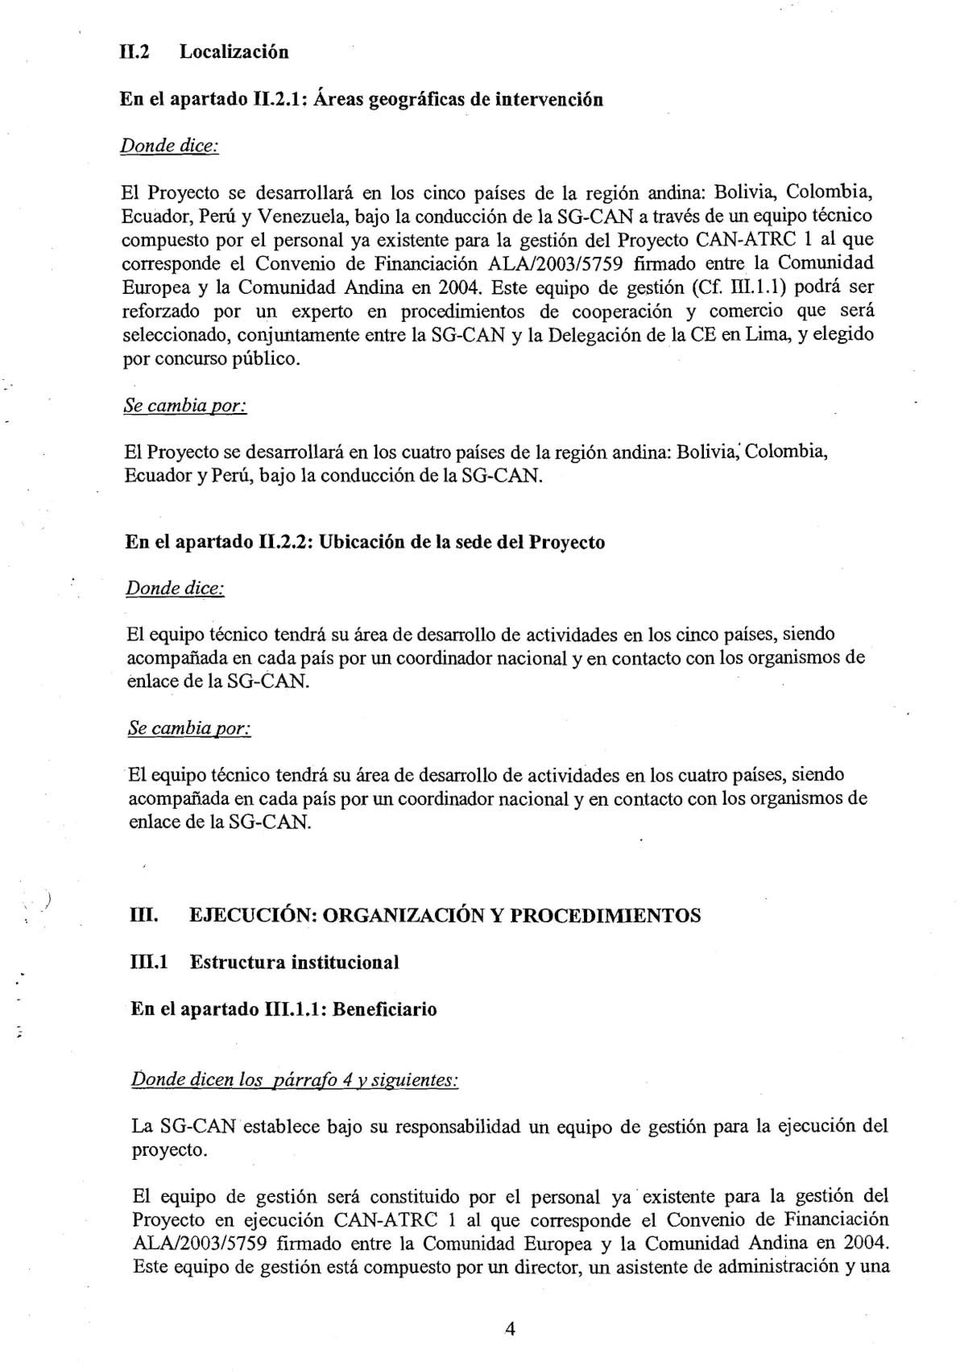 firmado entre la Comunidad Europea y la Comunidad Andina en 2004, Este equipo de gestión (Cf. III. 1.